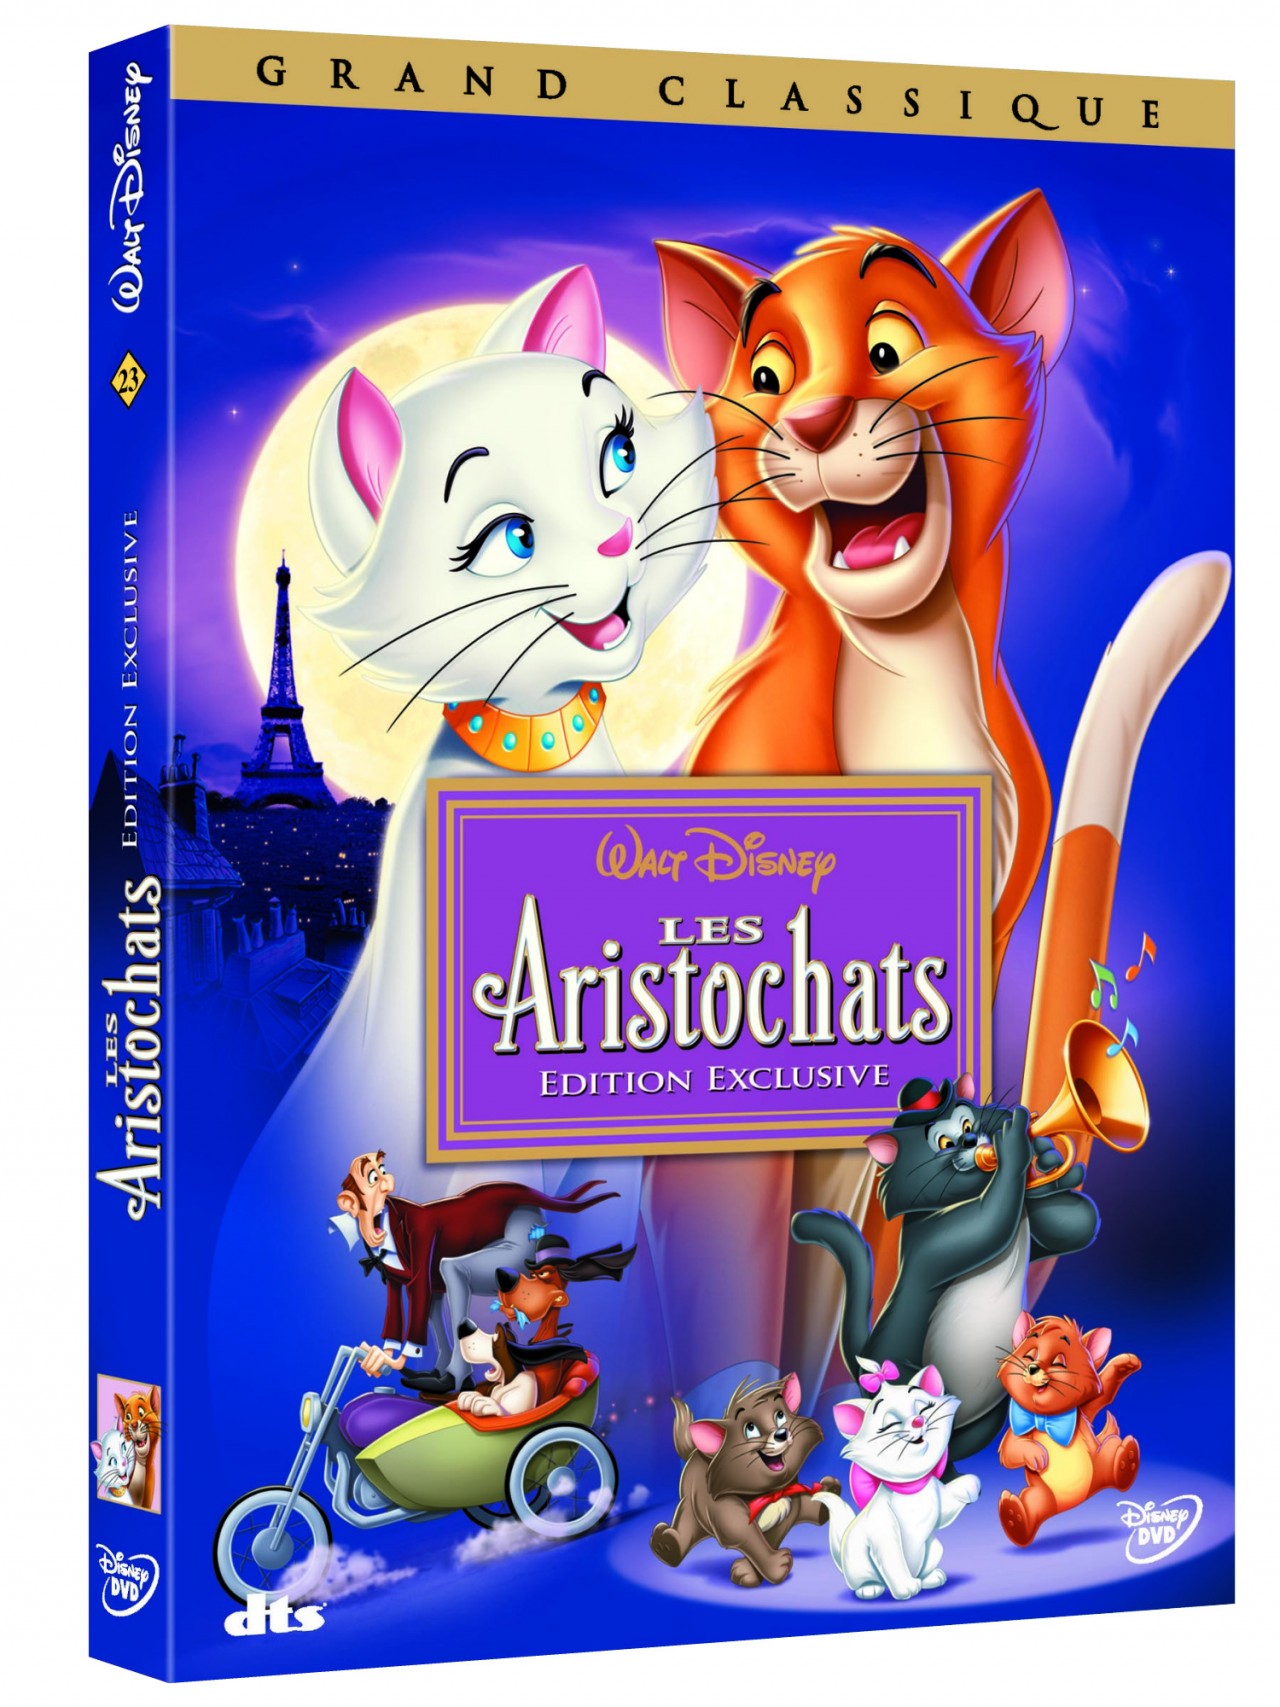 Quiz Les Aristochats : connaissez-vous bien le grand classique de Disney ?